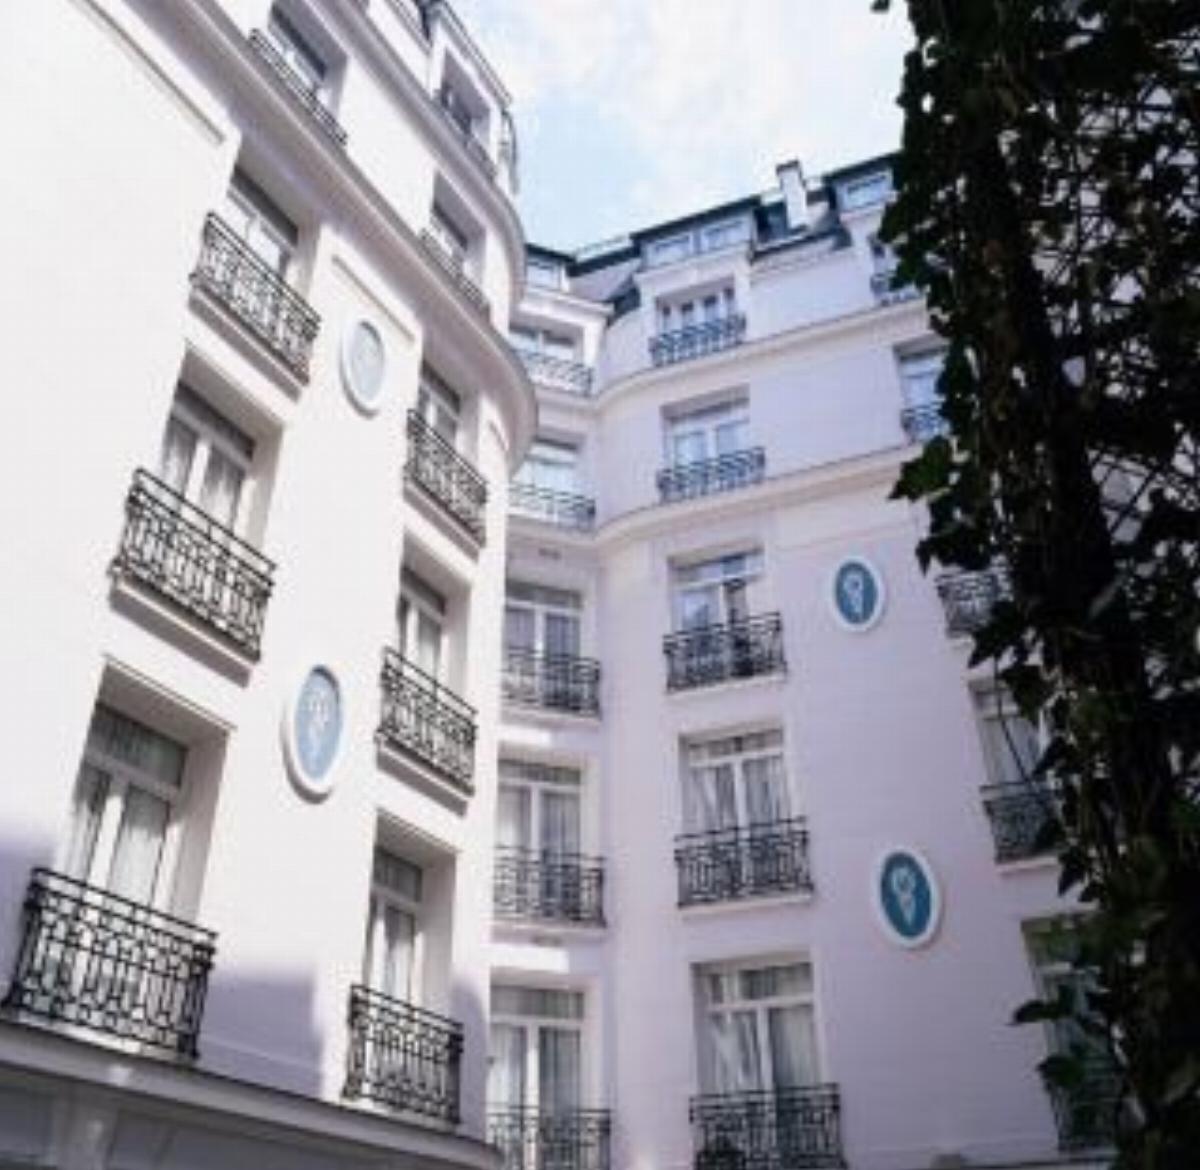 Maison Astor Paris, Curio Collection by Hilton Hotel Paris France